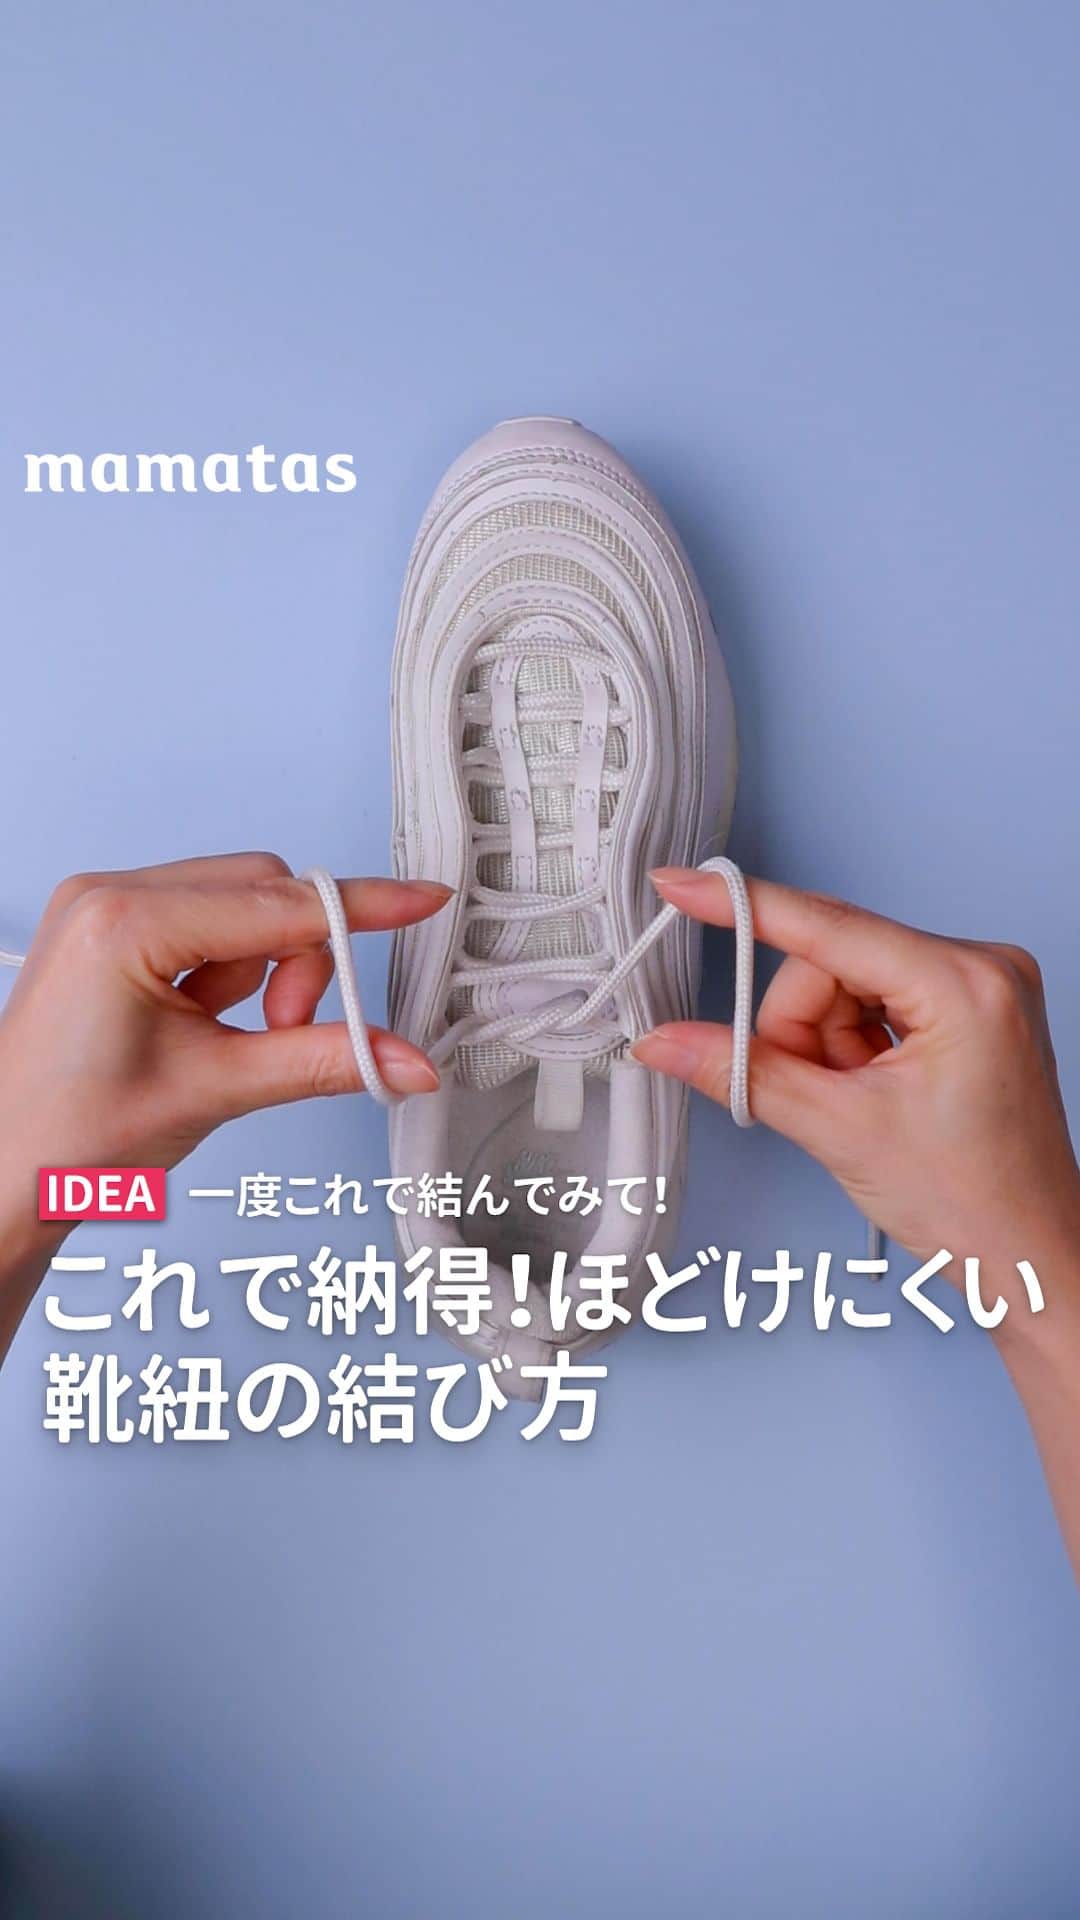 mama＋（ママタス）のインスタグラム：「一度これで結んでみて！これで納得！ほどけない靴紐の結び方 . これいいな！って思ったら、右上の「保存」ボタンを押してね🤗 ママタスは、令和の時代に新しい価値観を持って子育てしているママ＆パパを応援しています！ @mamatastv . プロのスポーツ選手も実践してる、ほどけにくい結び方があります！ 本当にほどけにくいから試してみてね✨  ■手順 1.右側の紐が上にくるように重ねて結ぶ。 2.靴紐の向こう側から小指を引っ掛ける。 3.親指と人差し指でコの字型にして、手を向かい合わせにして左手の親指が上になるようにクルッと回す。 4.親指と人差し指の間の紐を引っ張る！それだけ！  普段履きでもスポーツの時でも役に立つので覚えてて損はない♪  #育児#スマイル育児#育児日記#子育て#子育てぐらむ#ママ#新米ママ#ワーママ#ママ友#暮らし#ママタス#ママをもっと自由に#令和ママ#令和育児#令和家事#mamatas#靴紐#くつひも#結び方#スポーツ#スニーカー」